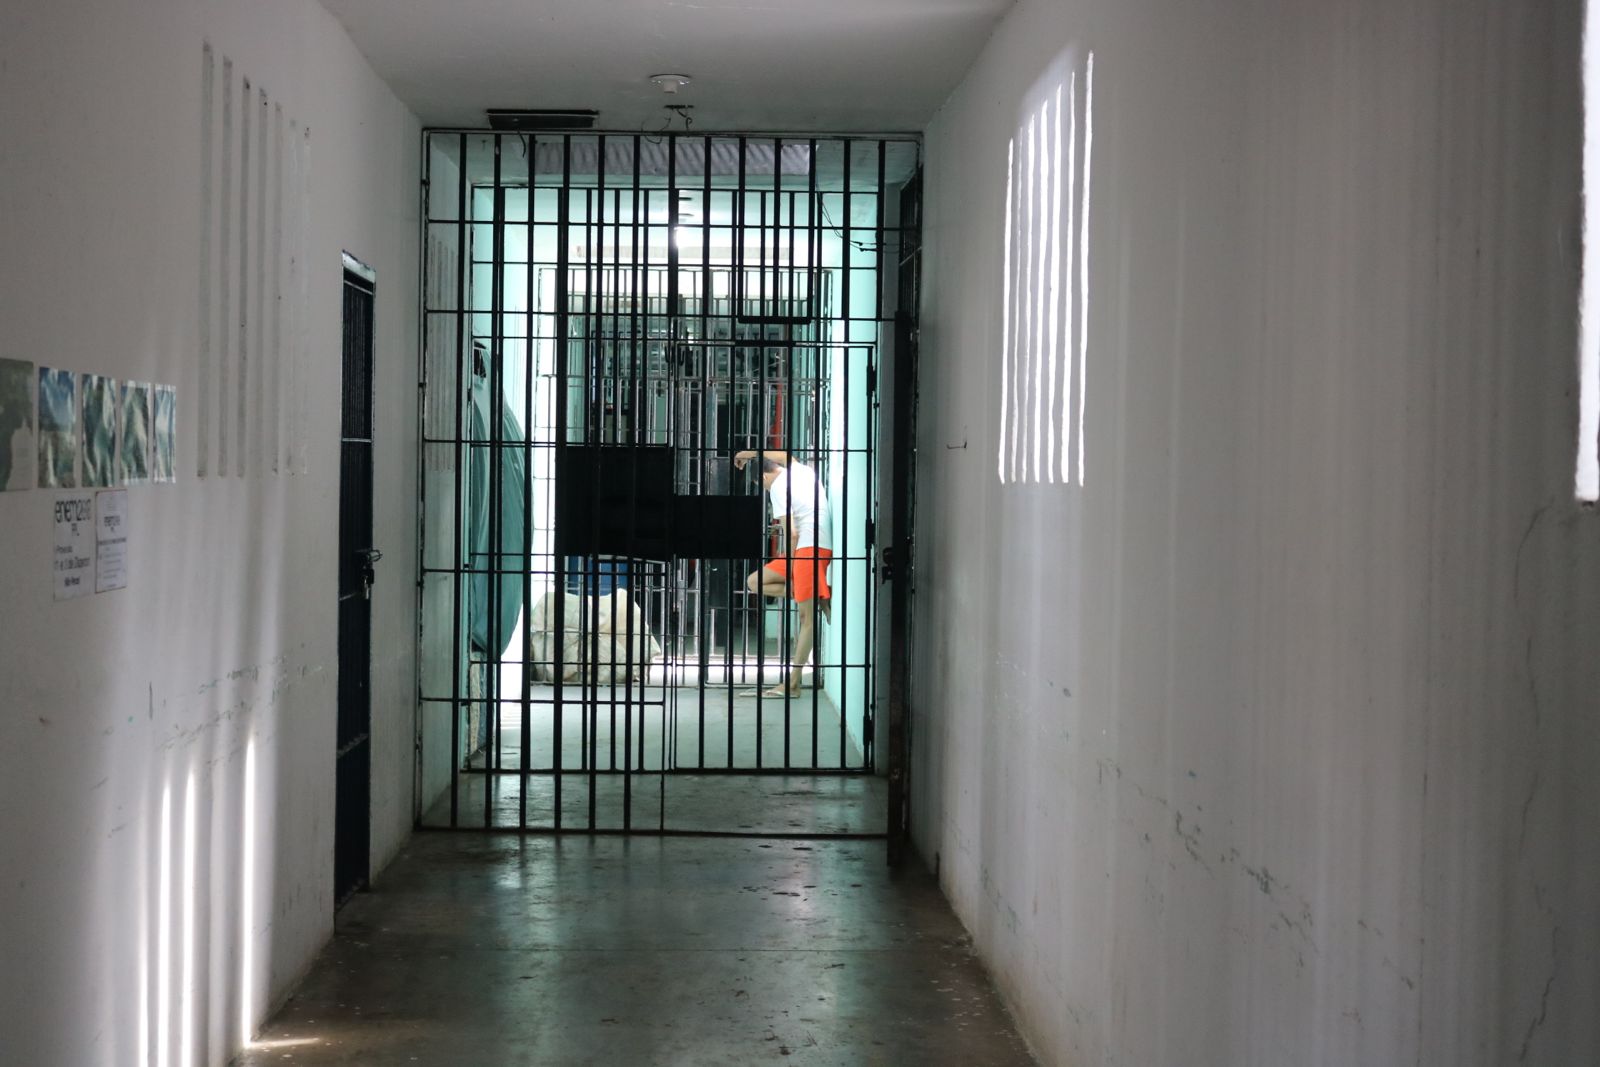 Tribunal de Justiça reconhece atuação legítima da DPCE na defesa dos direitos das pessoas encarceradas em vulnerabilidade